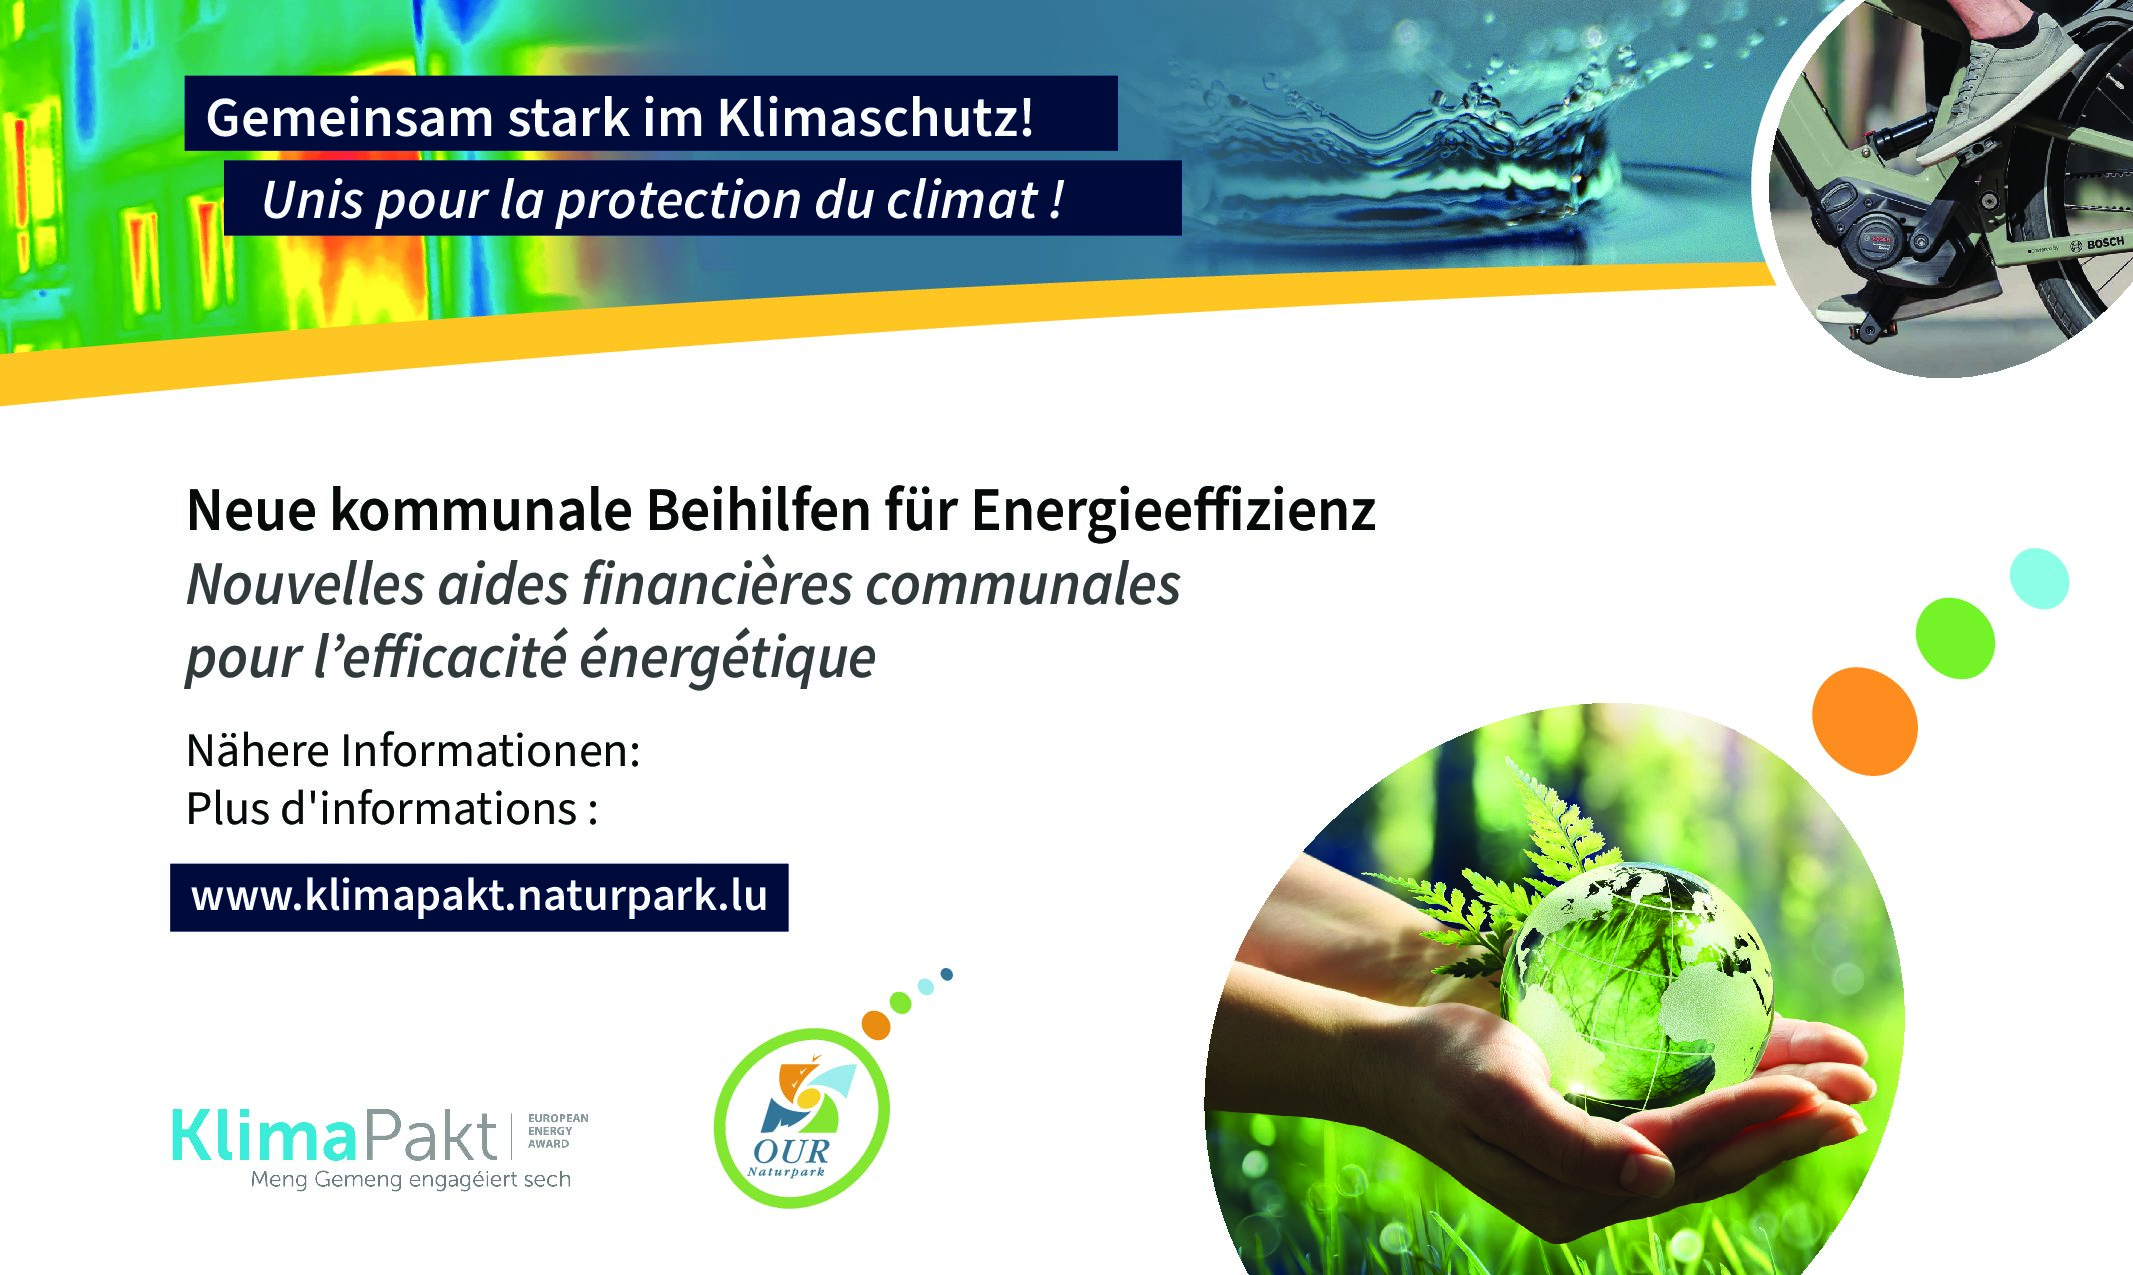 Aides financières communales pour l’efficacité énergétique - Kommunale Beihilfen für Energieeffizienz